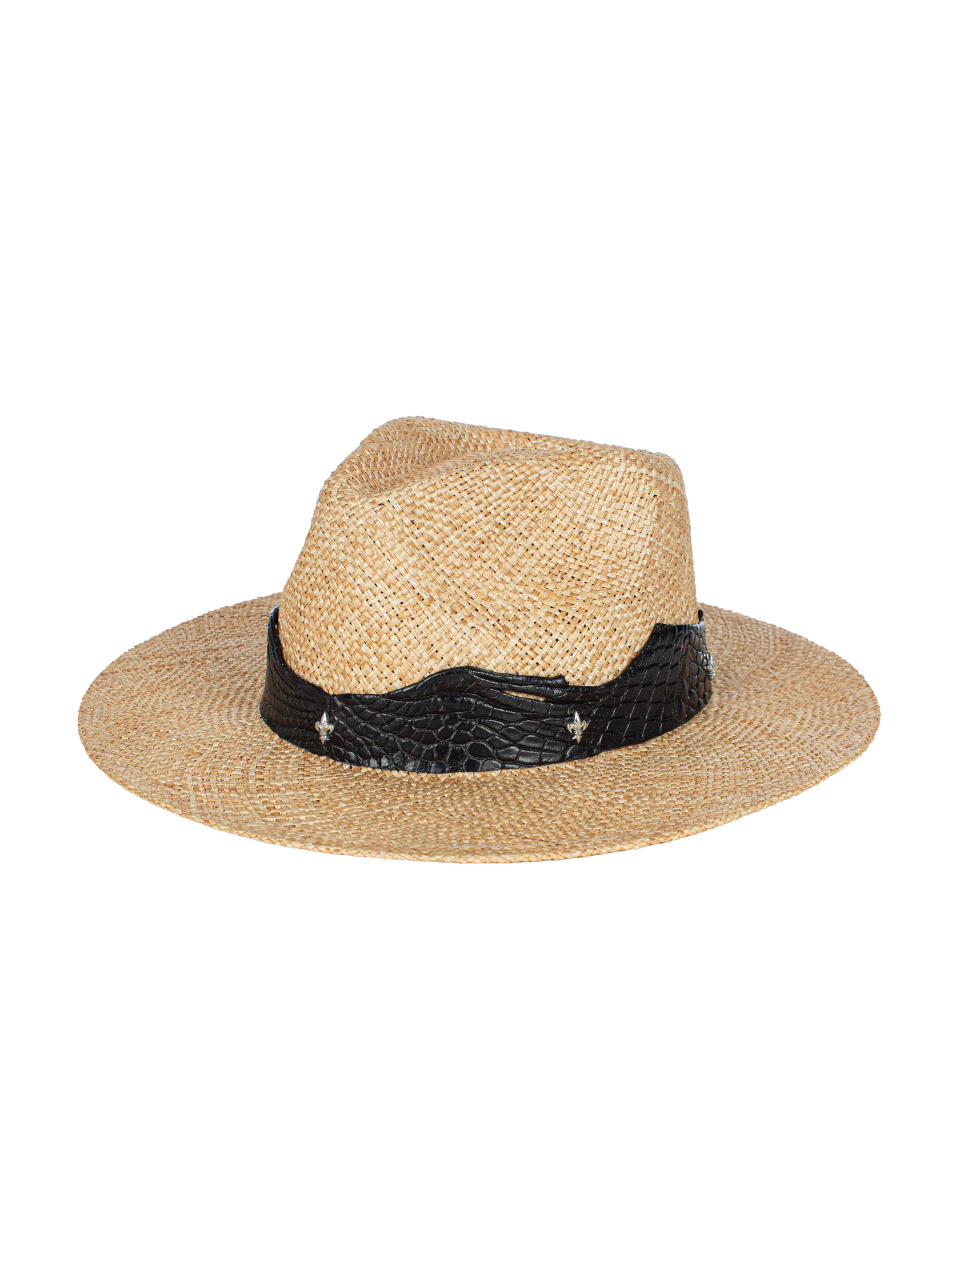 Соломенная шляпа с отделкой из черной кожи крокодила, 1